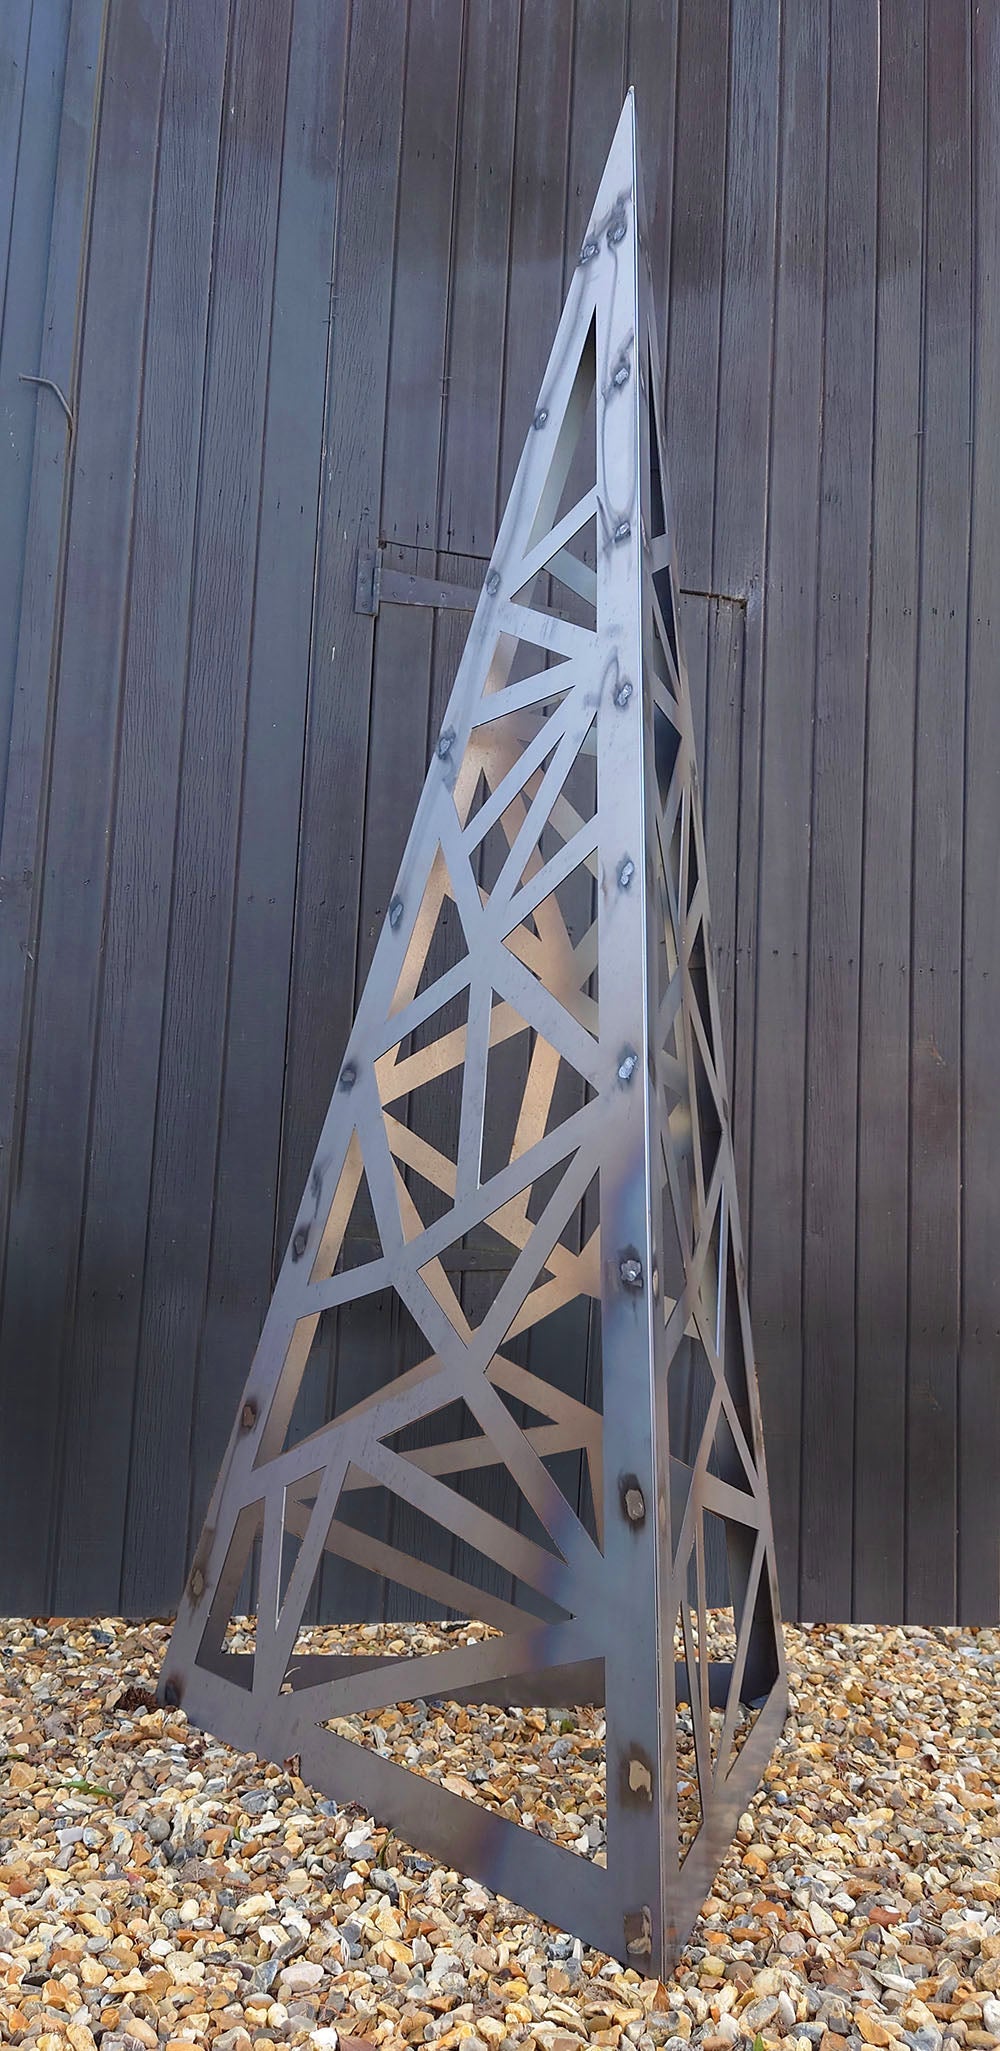 Giant Triangular Obelisk Sculpture Garden Feature - Indoor Outdoors